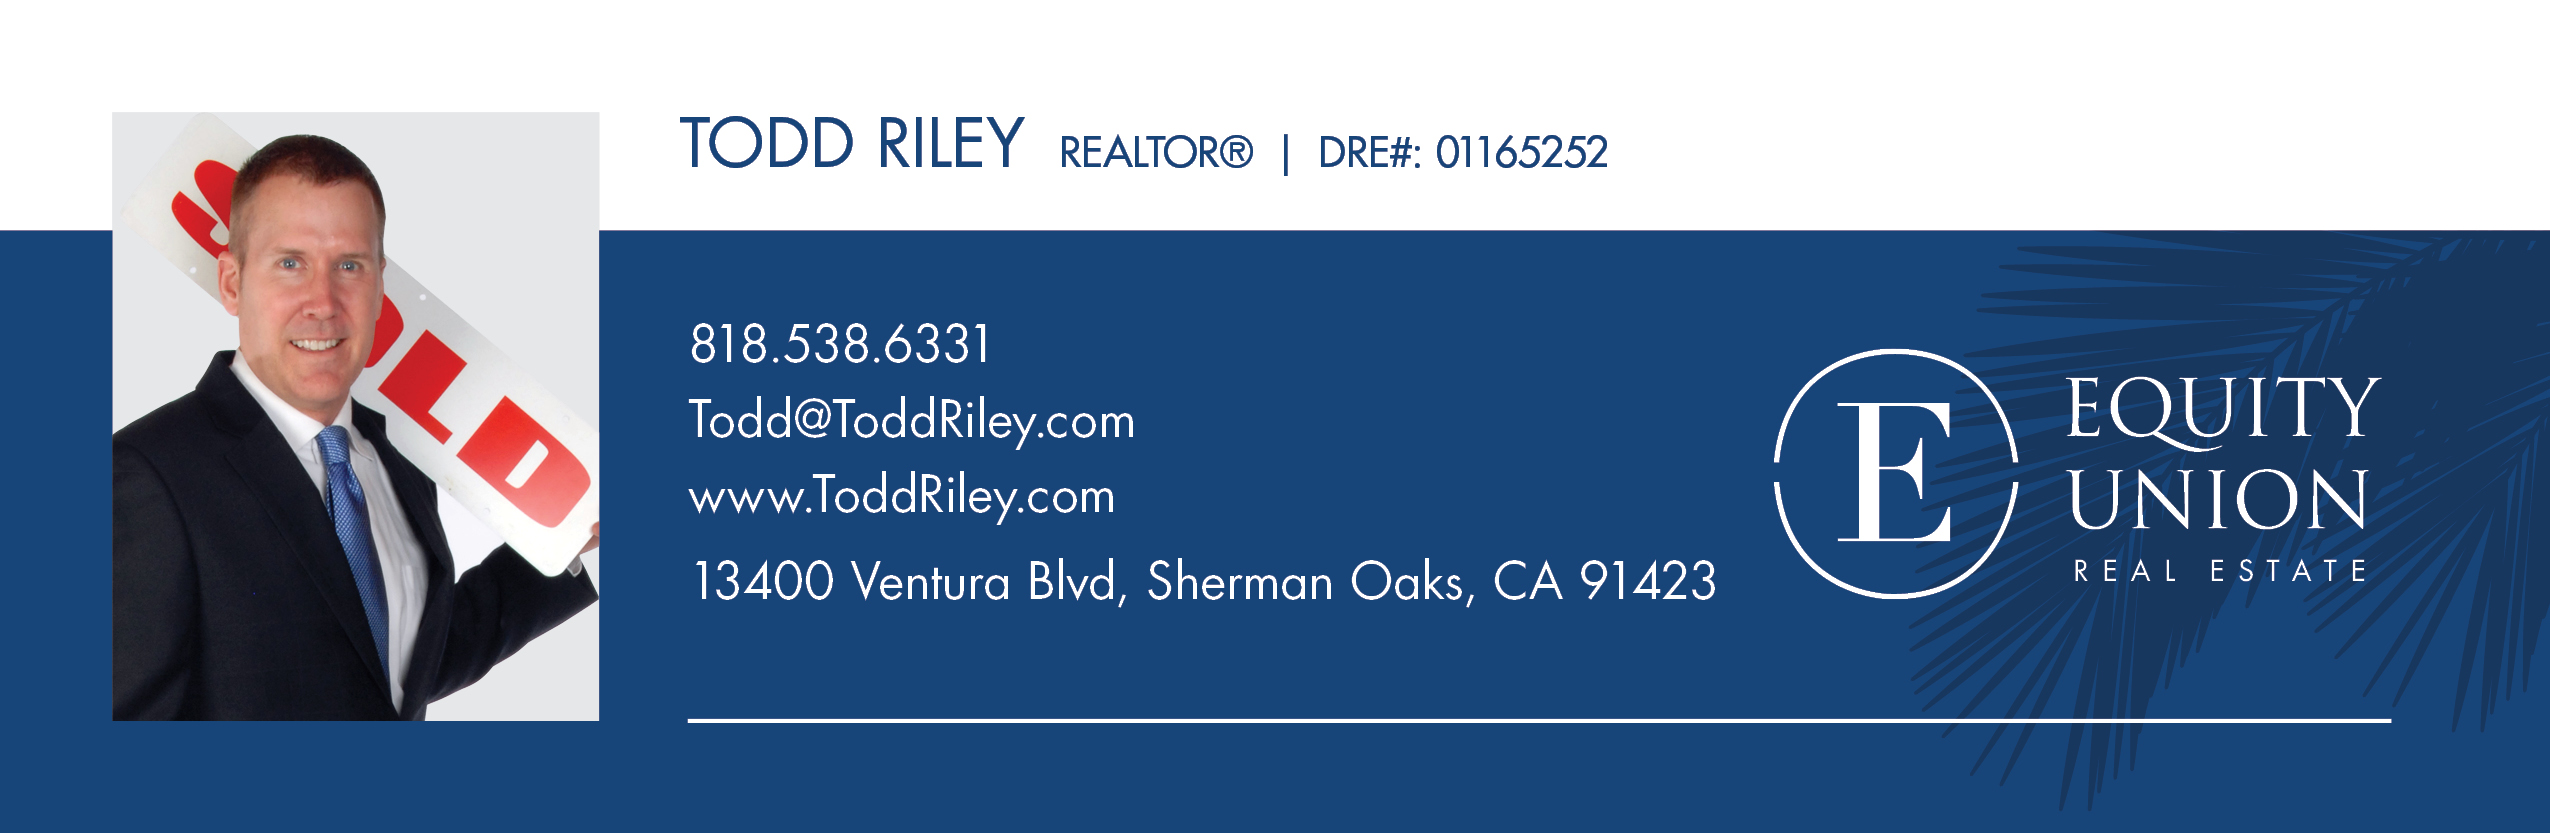 Todd Riley Real Estate Signature